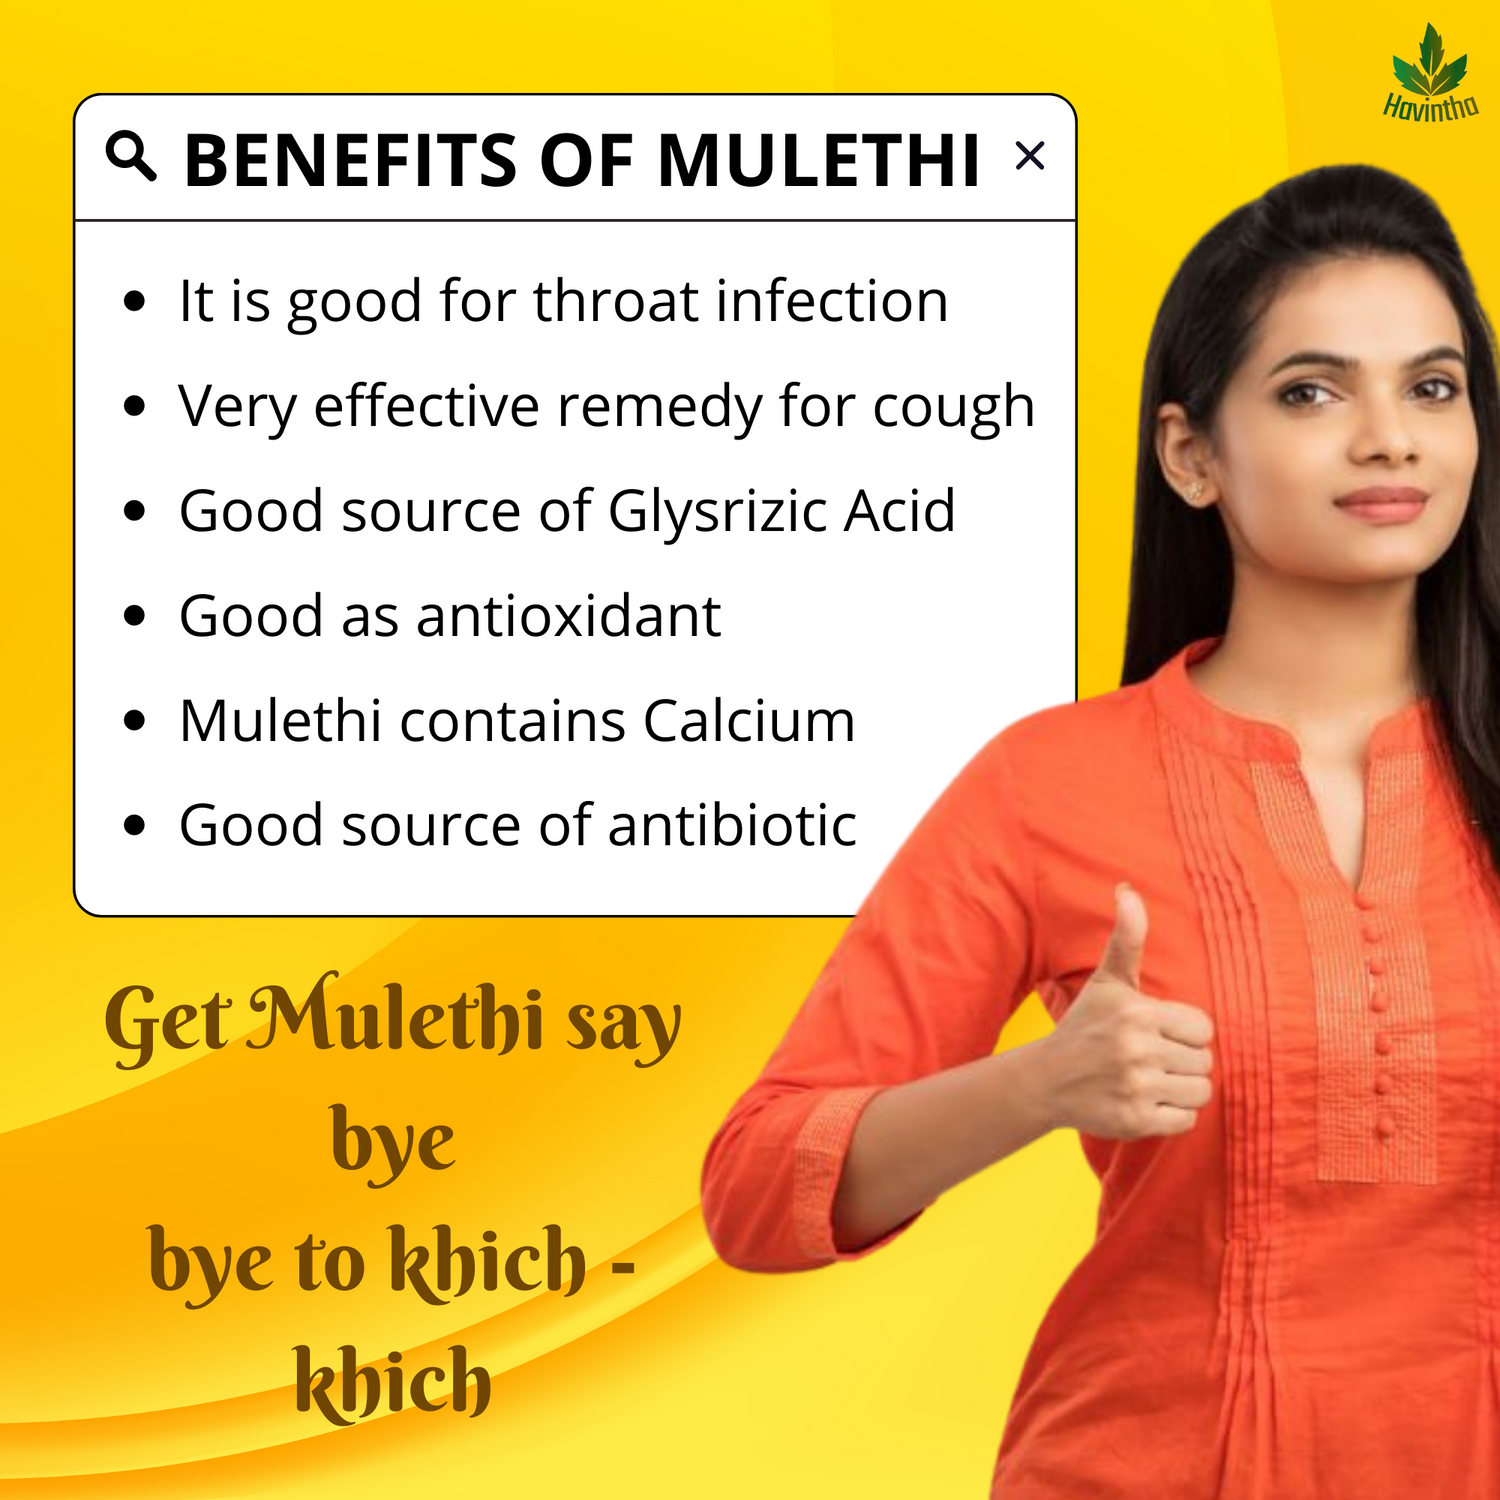 Benefits of Mulethi 